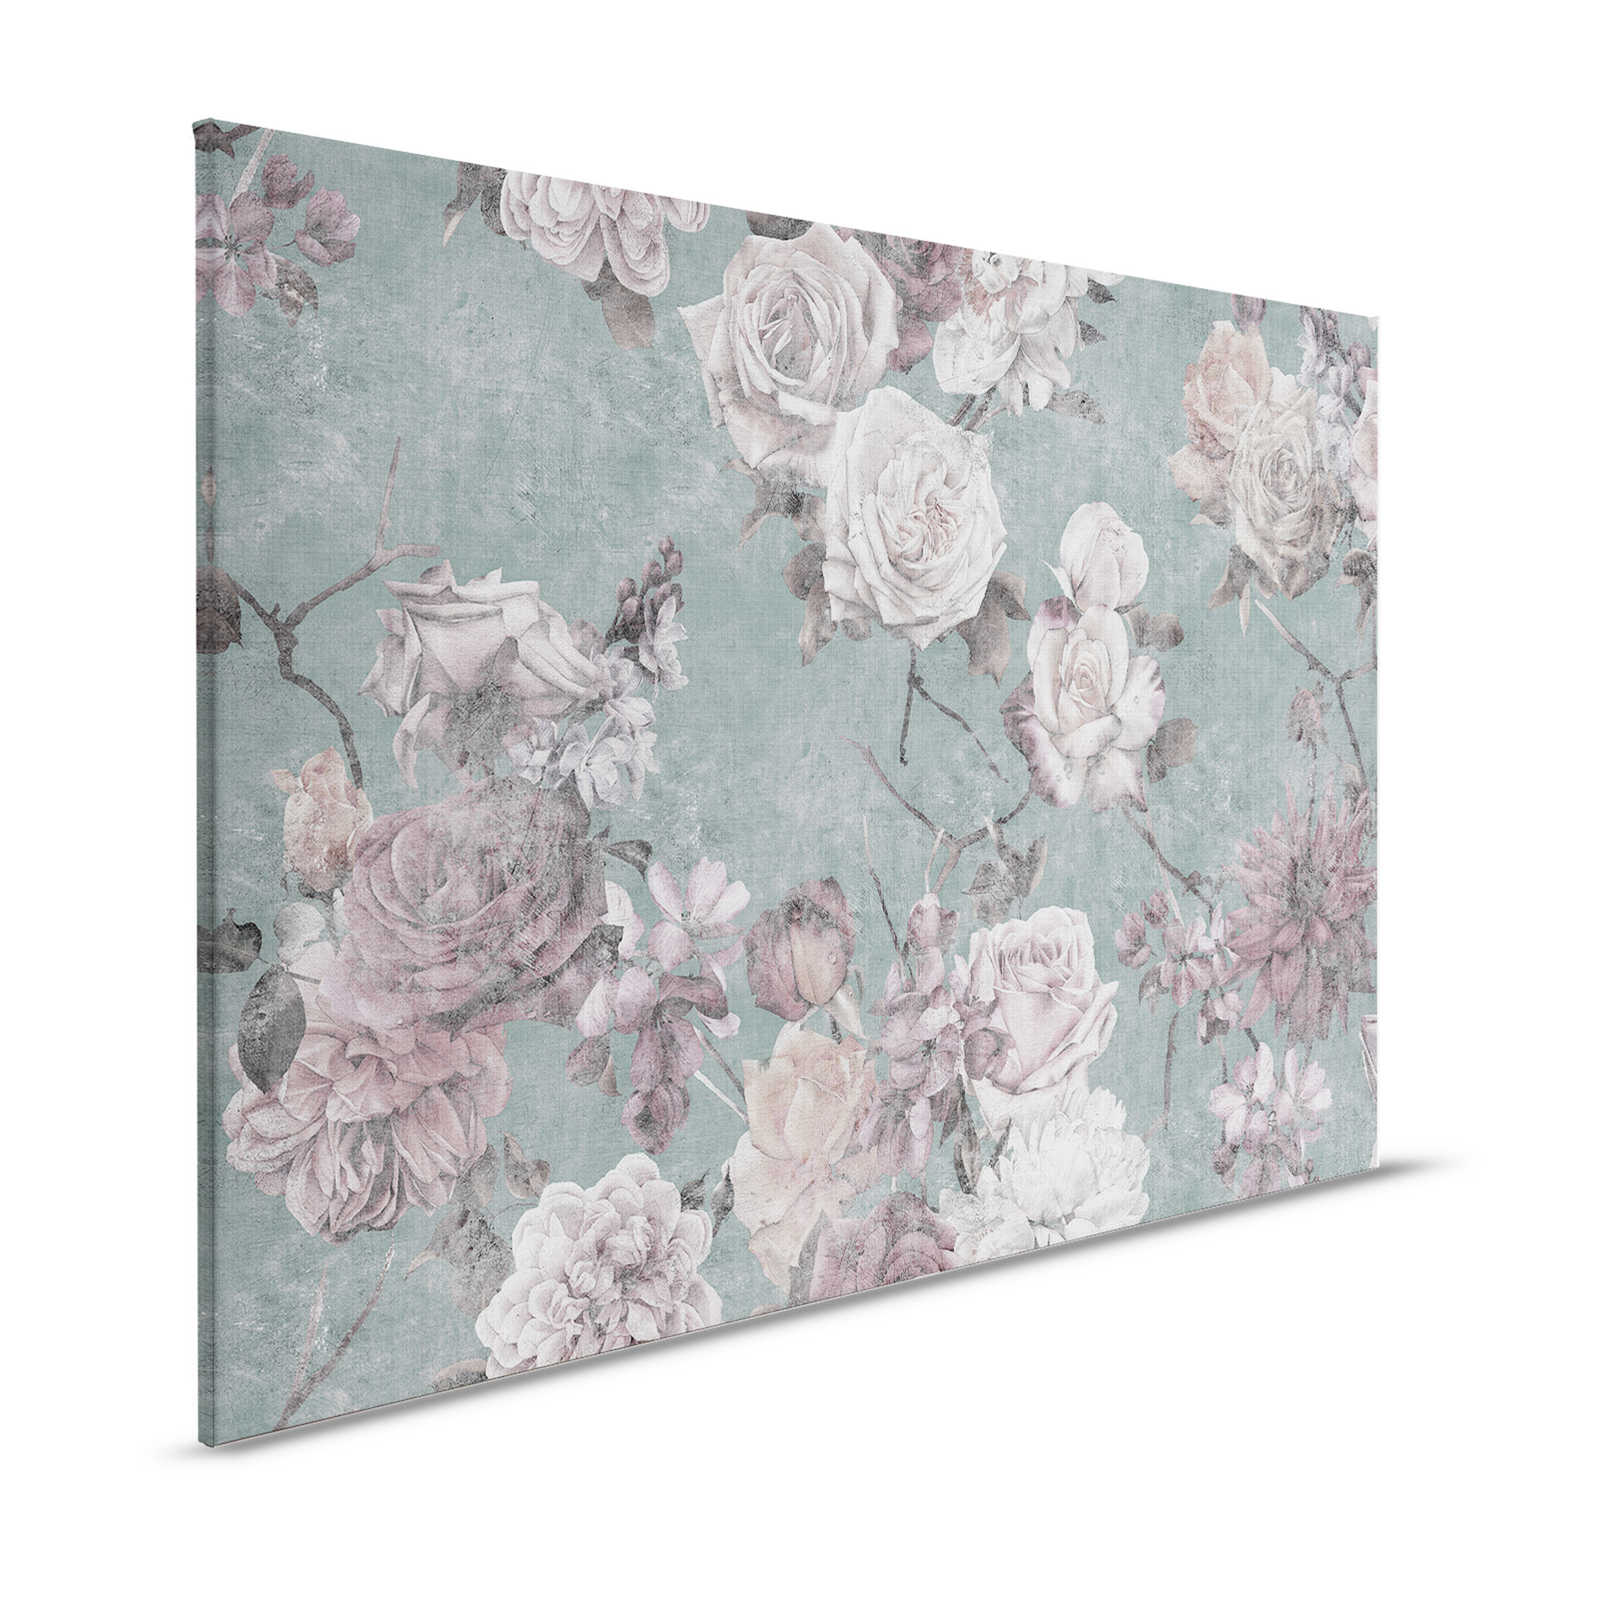 La Bella Addormentata 2 - Quadro su tela con petali di rosa in stile vintage - 1,20 m x 0,80 m
